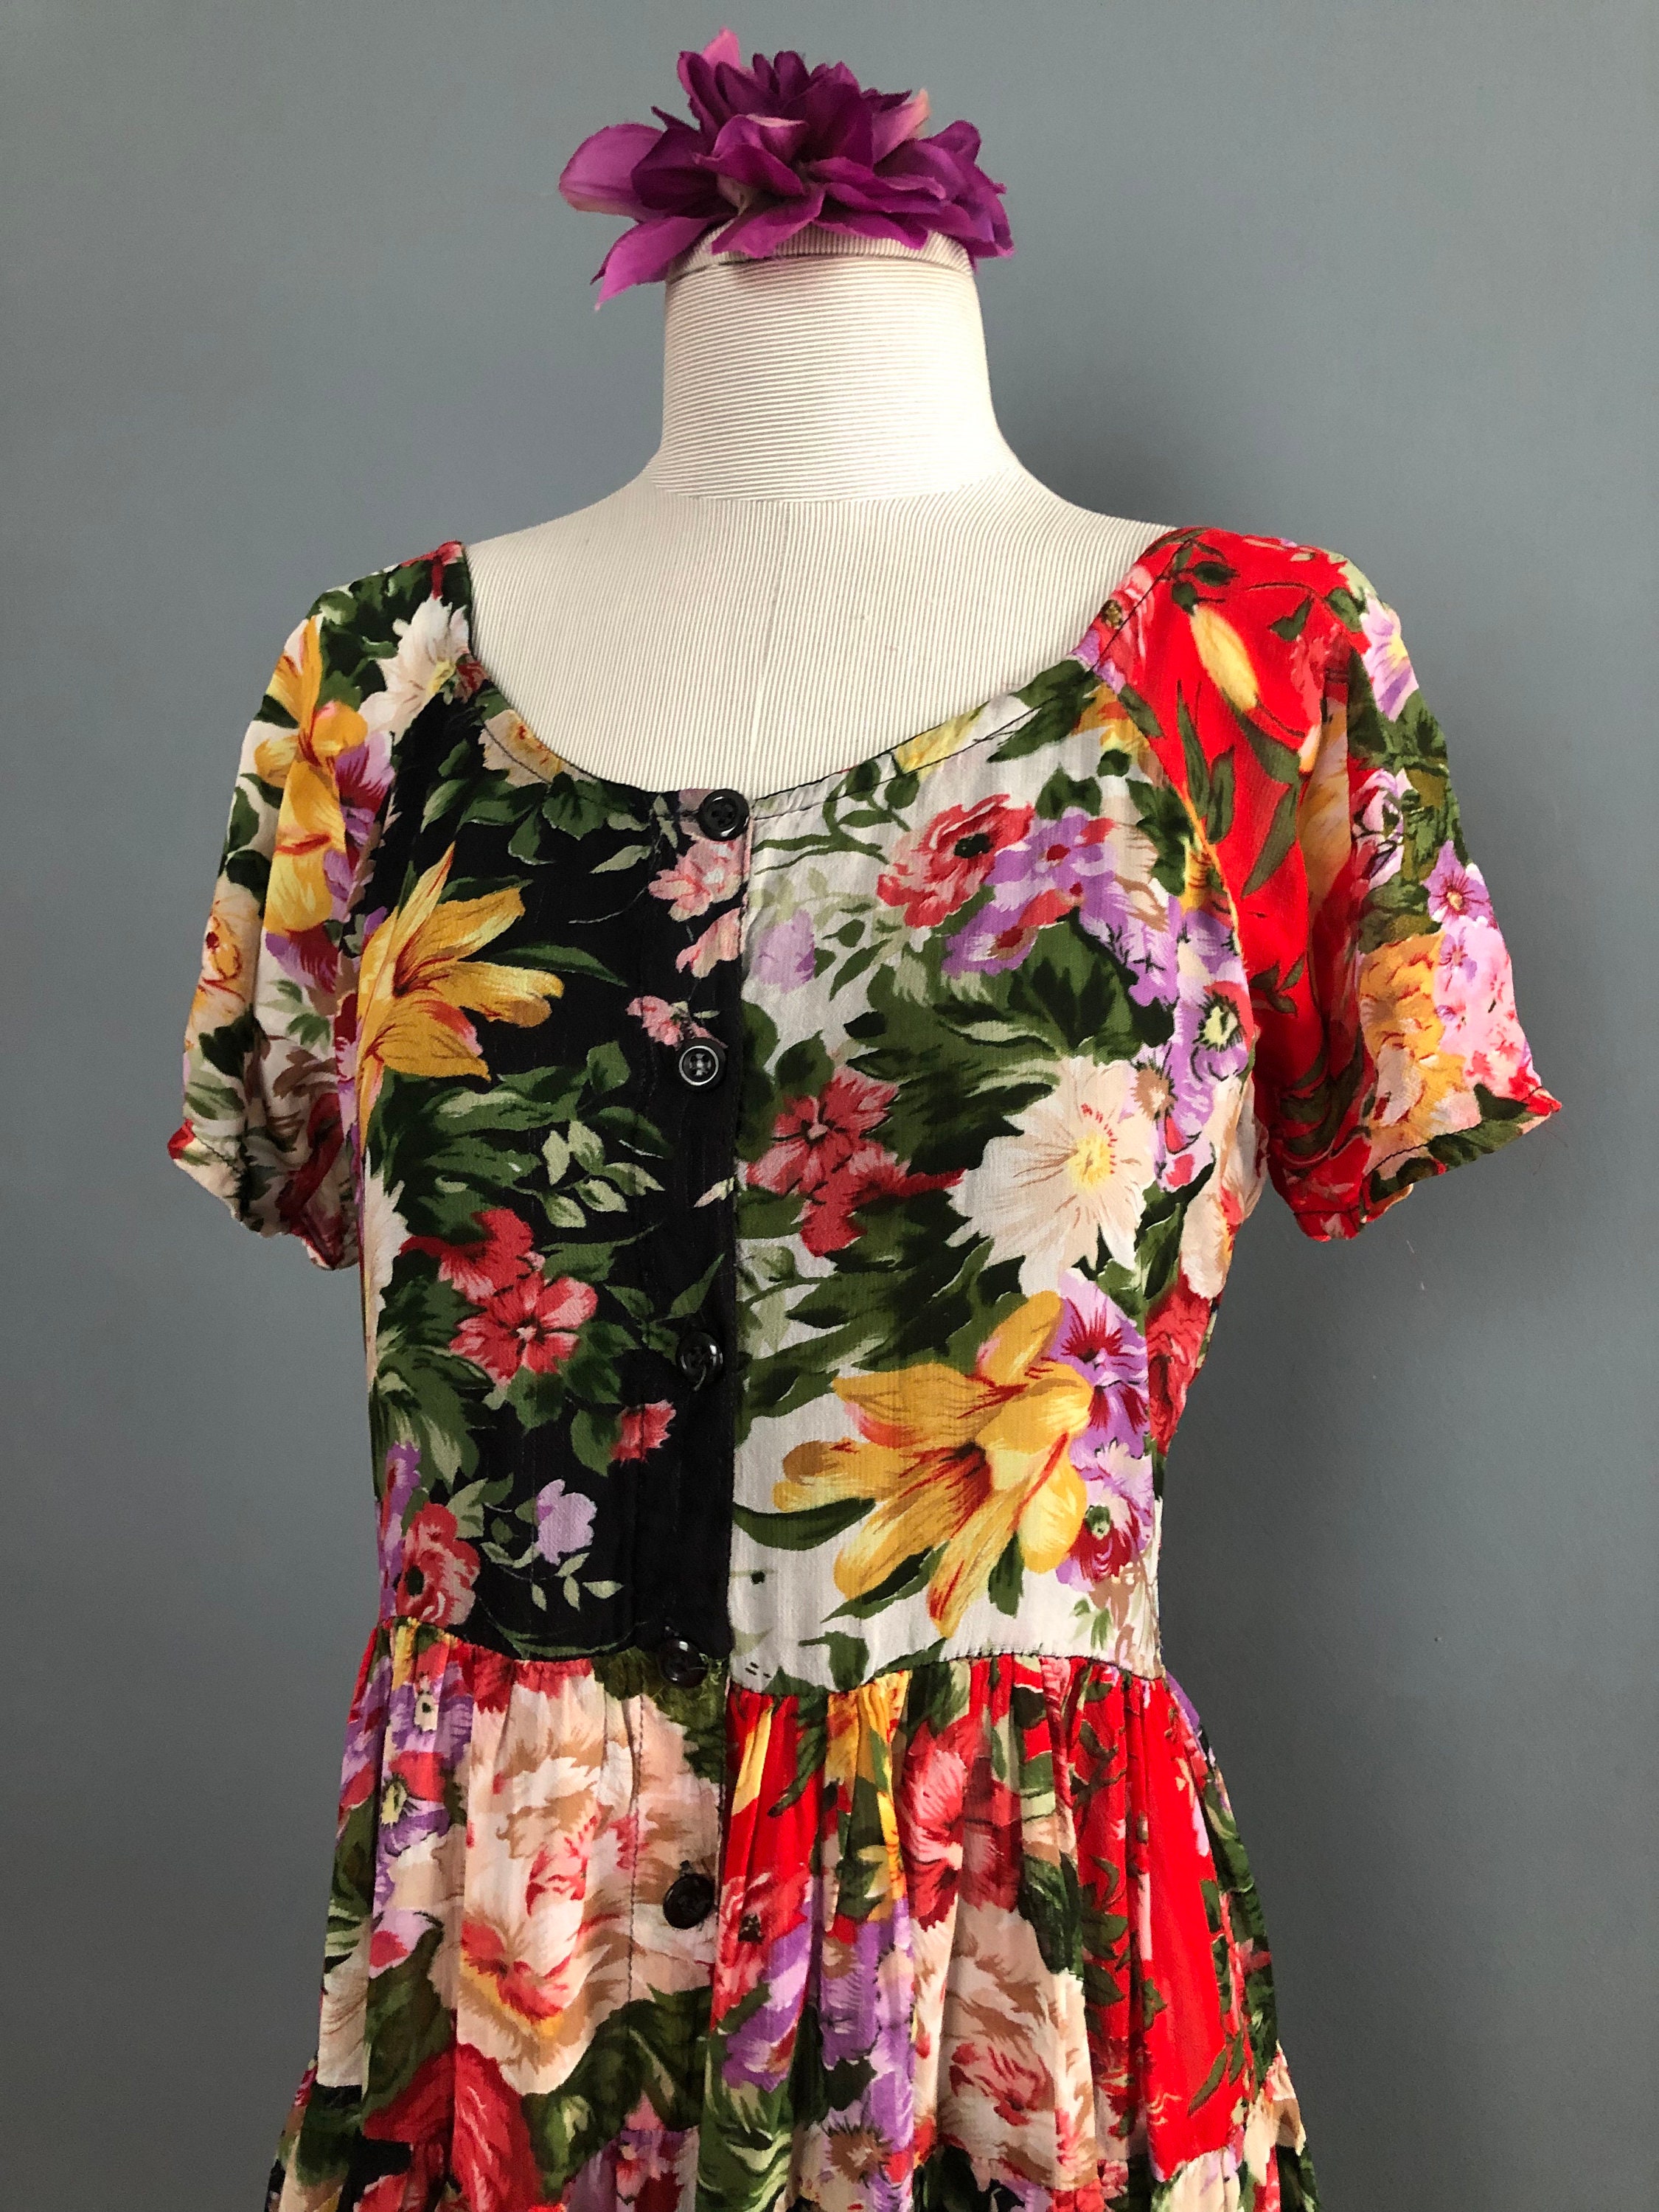 Sheer Floral Maxi Dress 80s Neiman Marcus Full Skirt Boho - Etsy